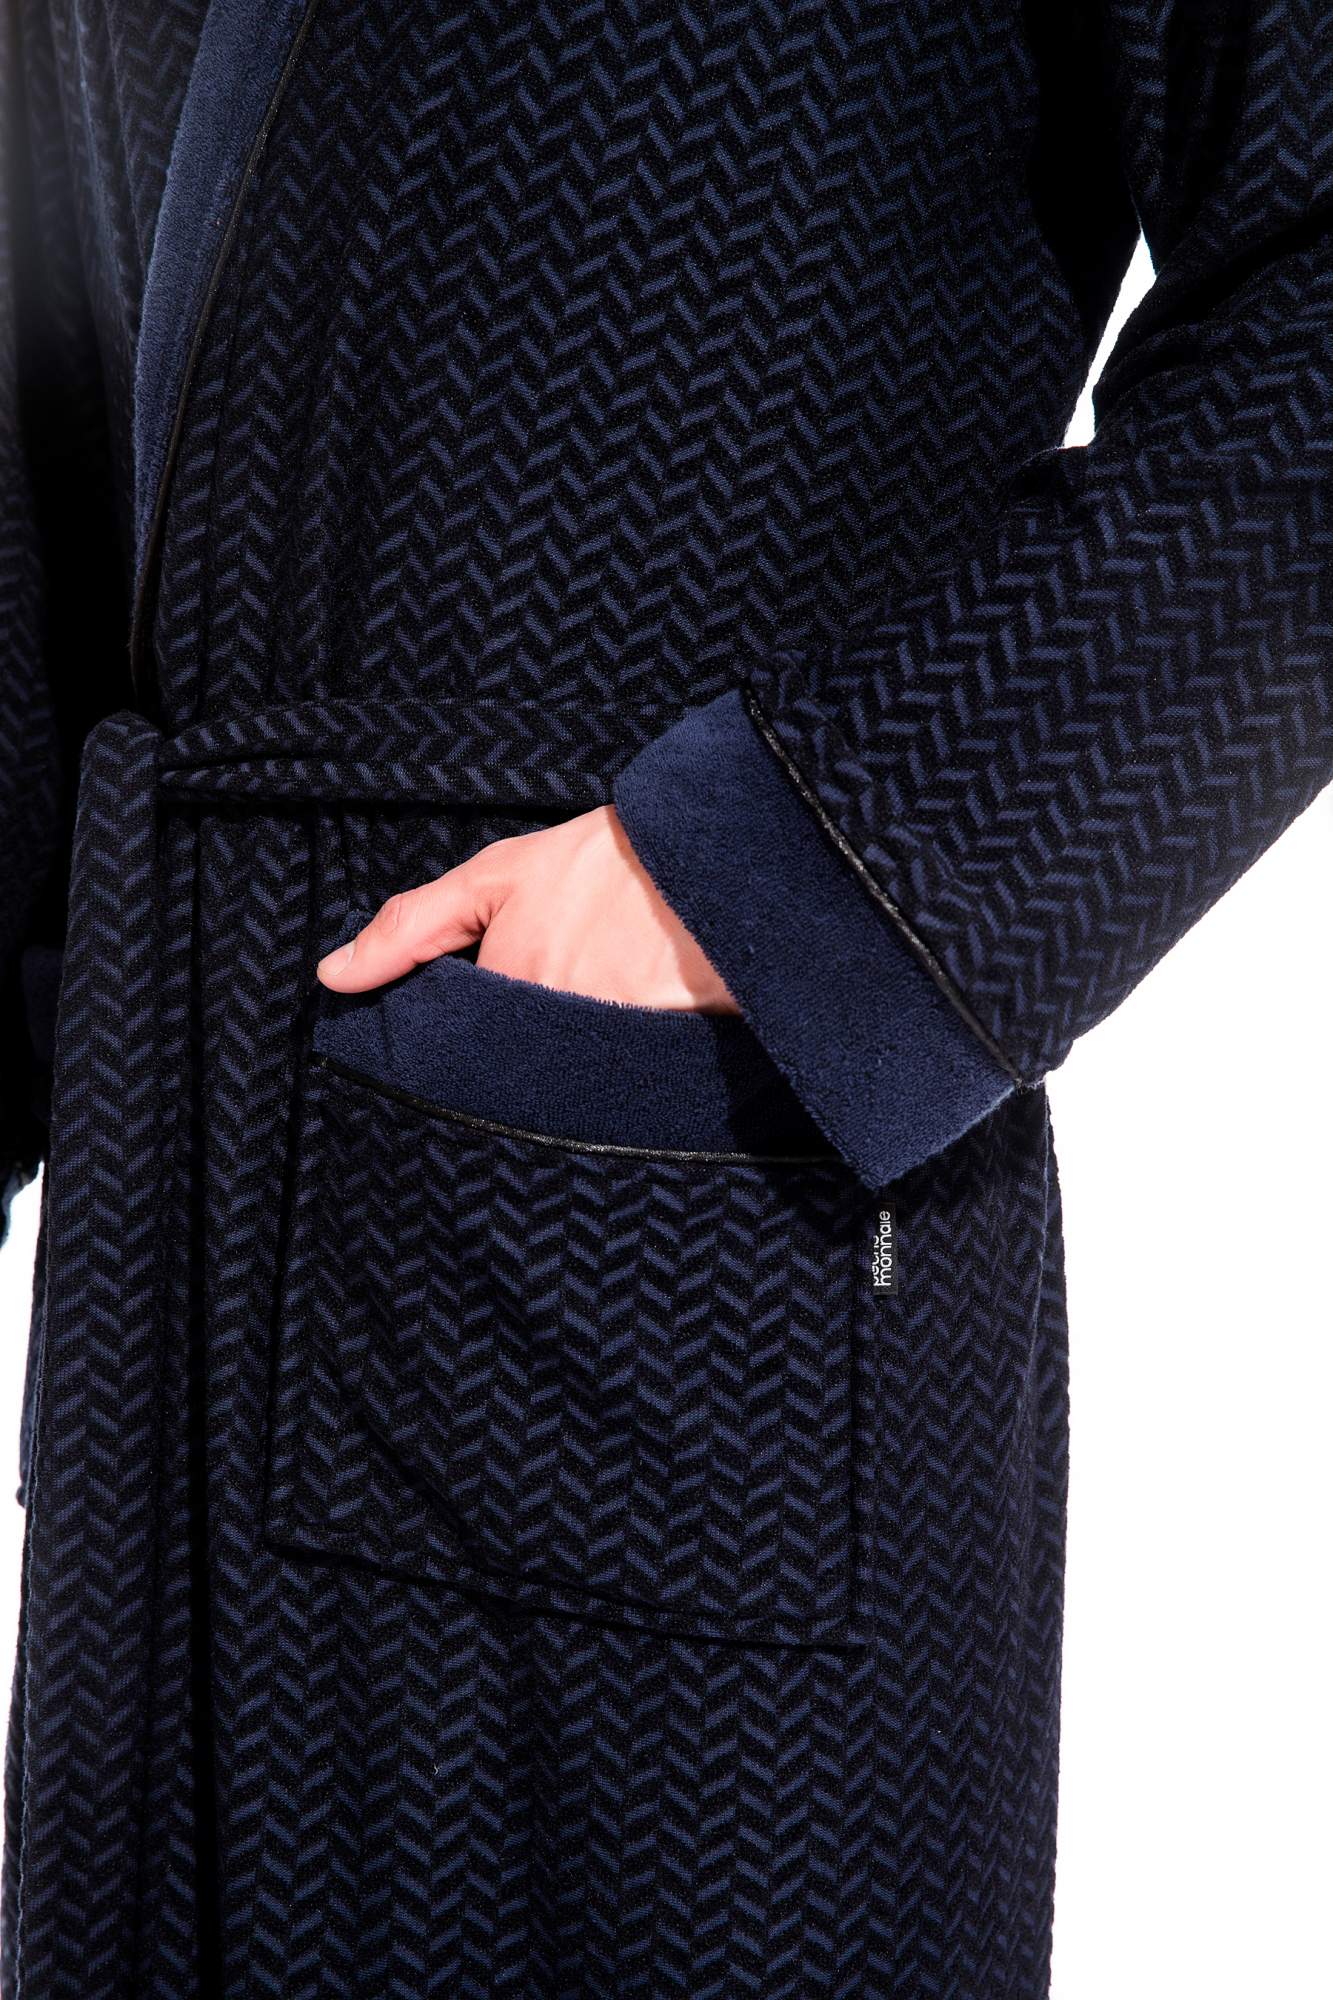 Мужской облегченный махровый халат из бамбука Peche Monnaie 419, синий, XL